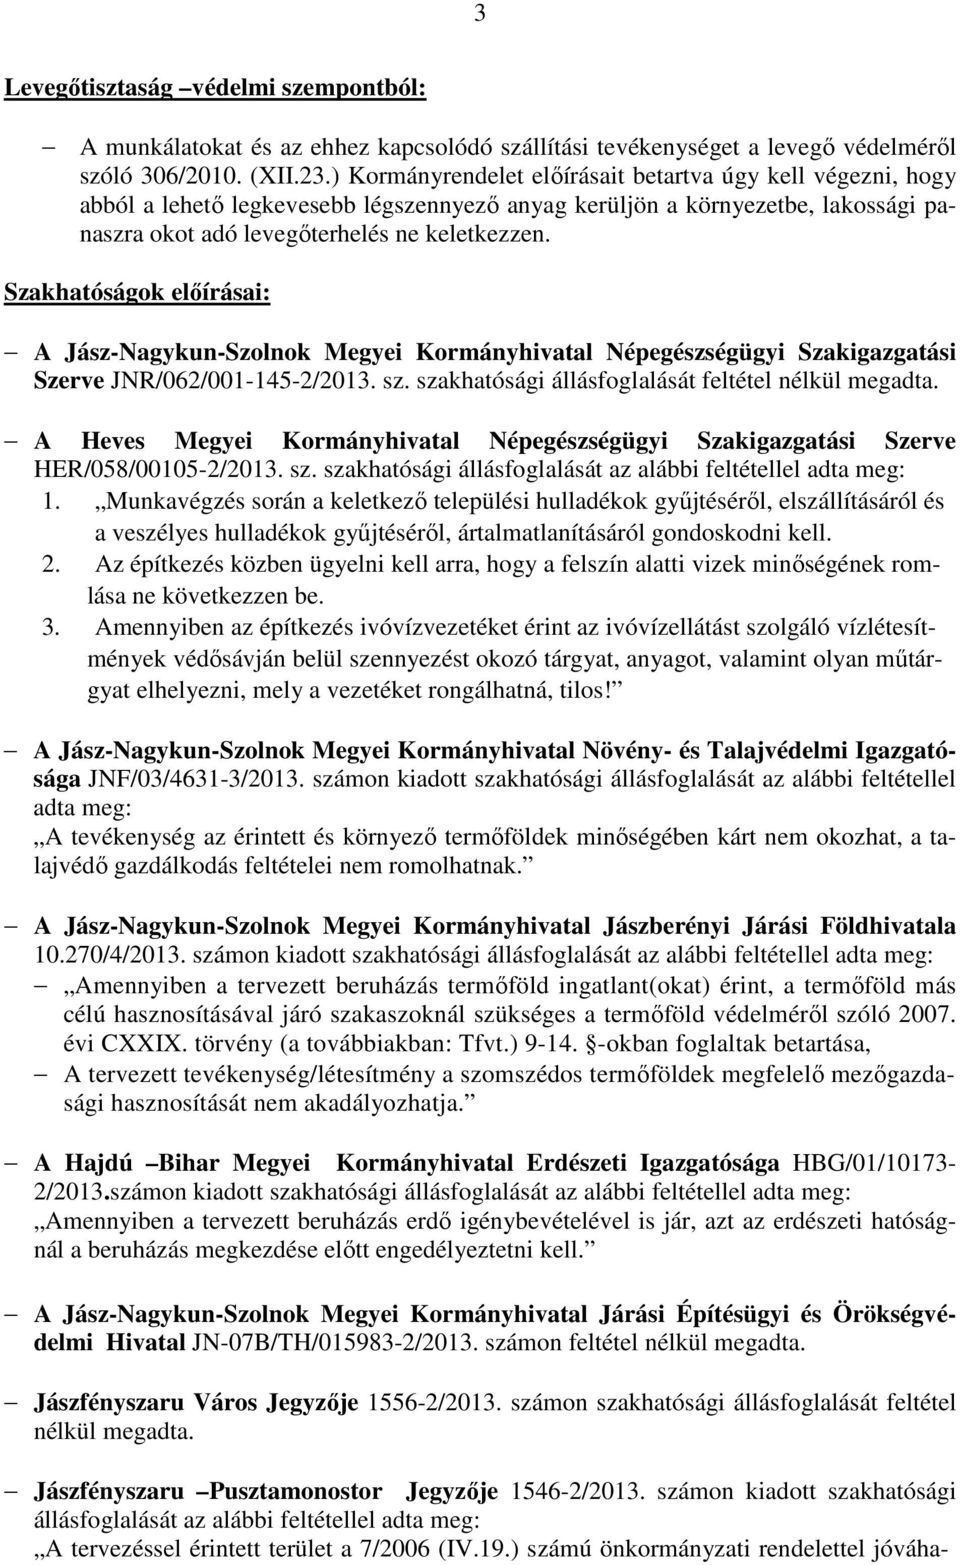 Szakhatóságok előírásai: A Jász-Nagykun-Szolnok Megyei Kormányhivatal Népegészségügyi Szakigazgatási Szerve JNR/062/001-145-2/2013. sz. szakhatósági állásfoglalását feltétel nélkül megadta.